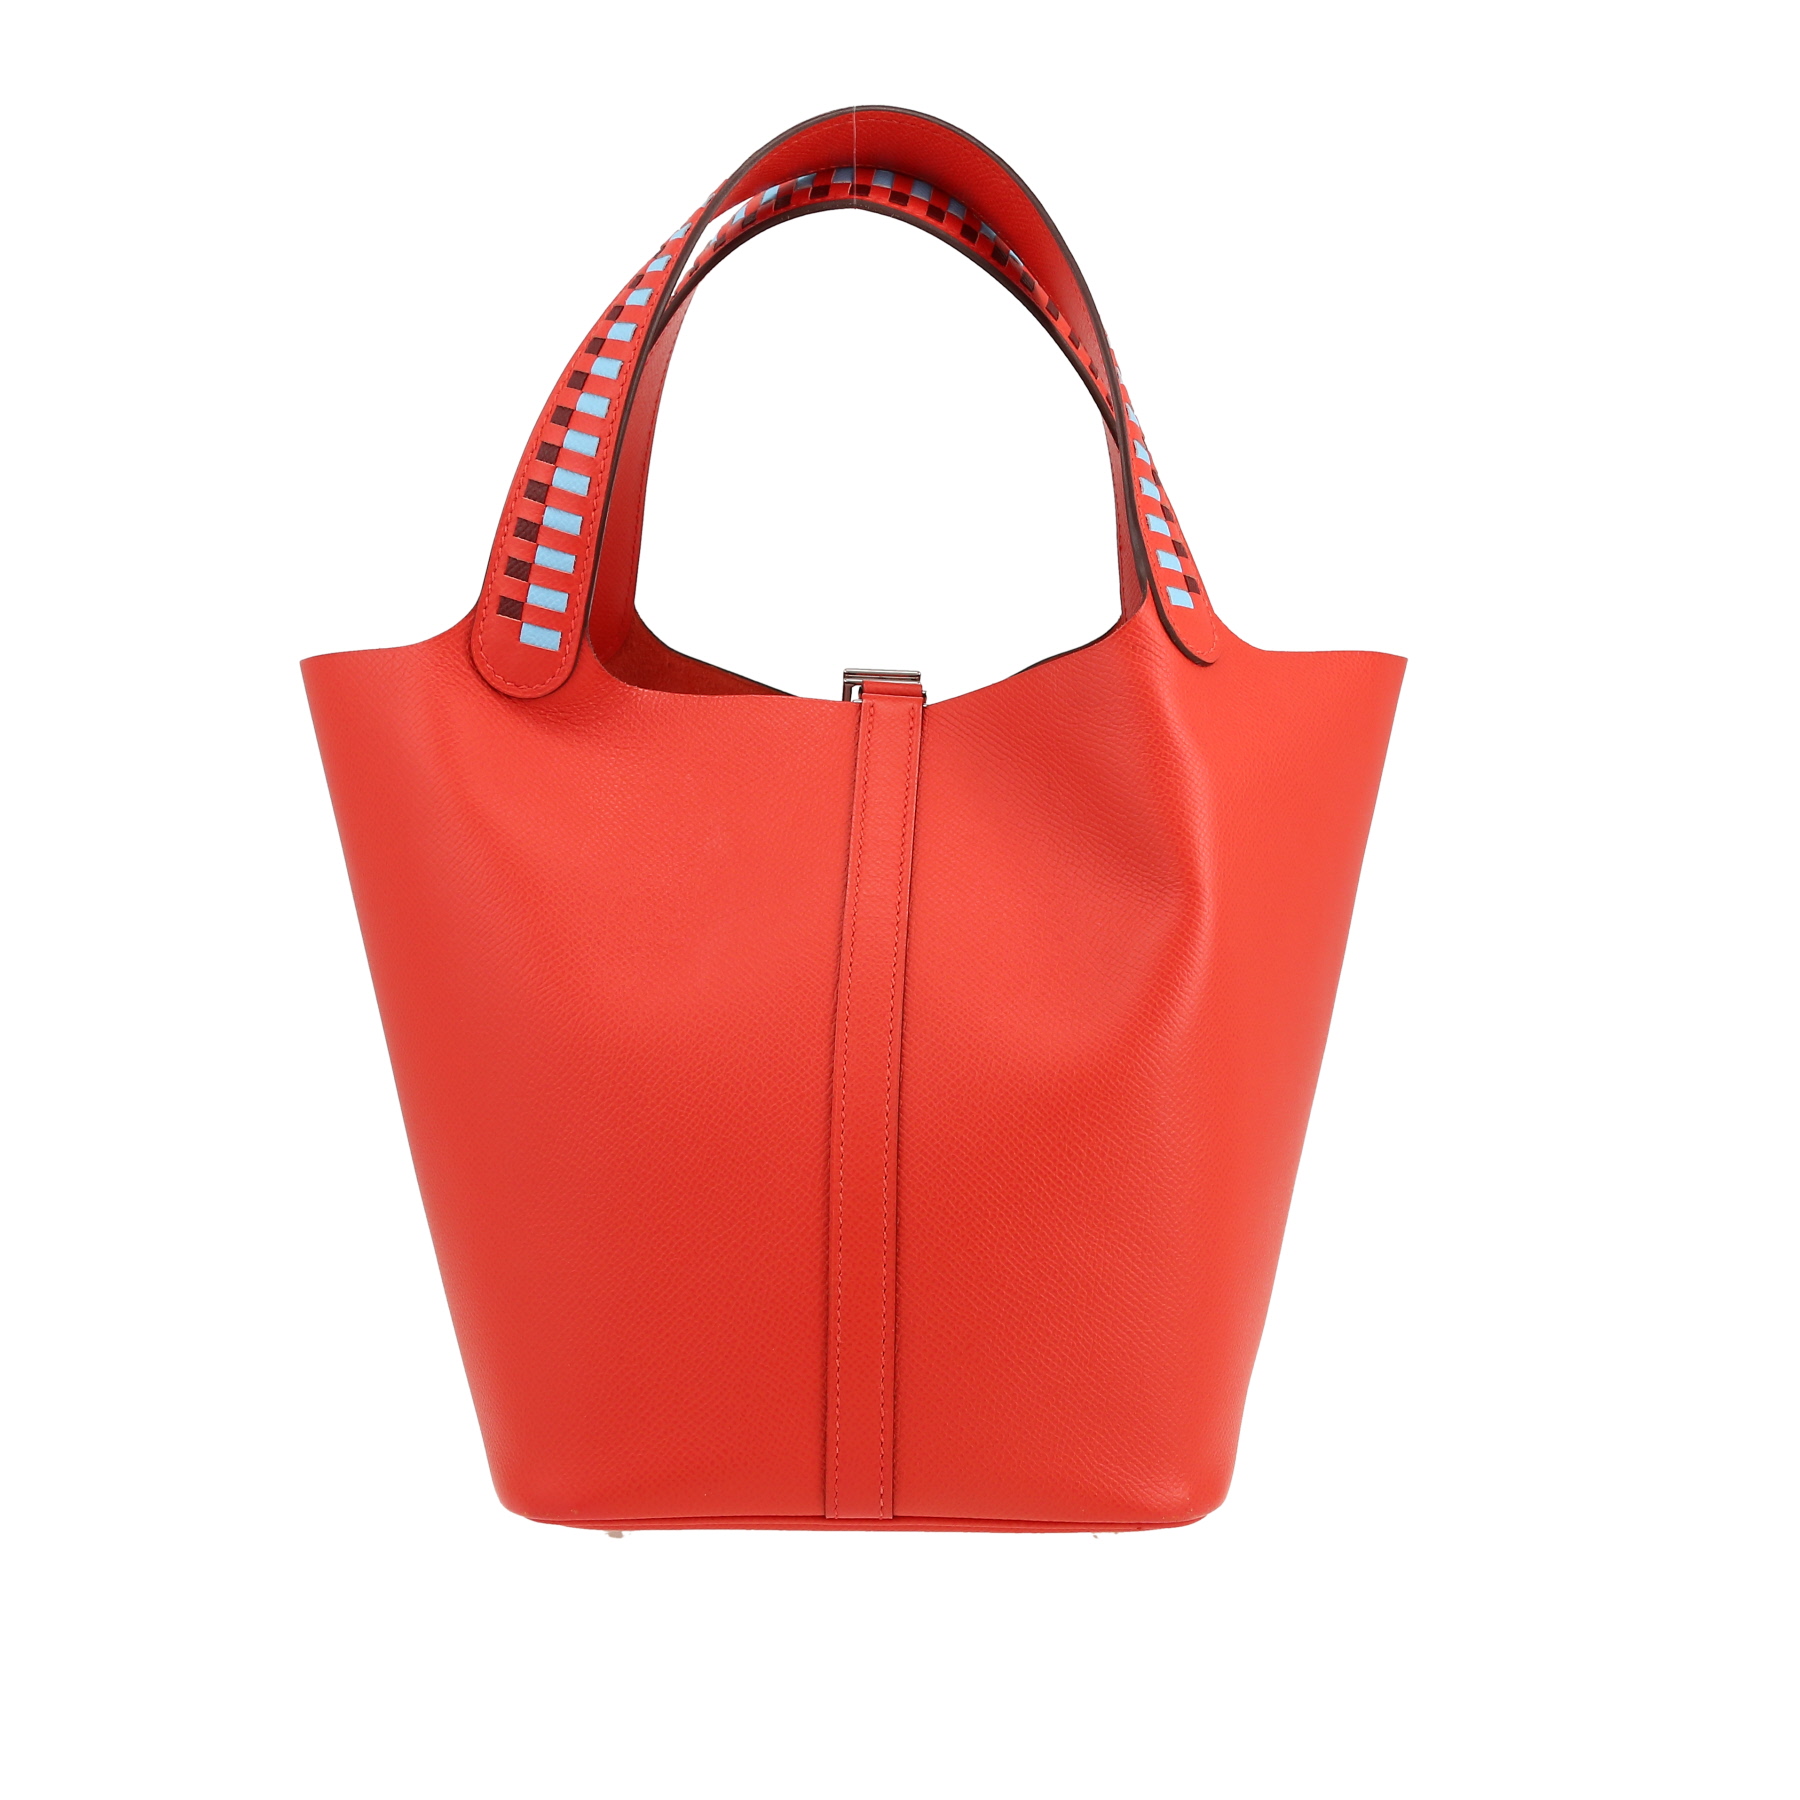 Picotin Lock Handbag In Epsom Leather